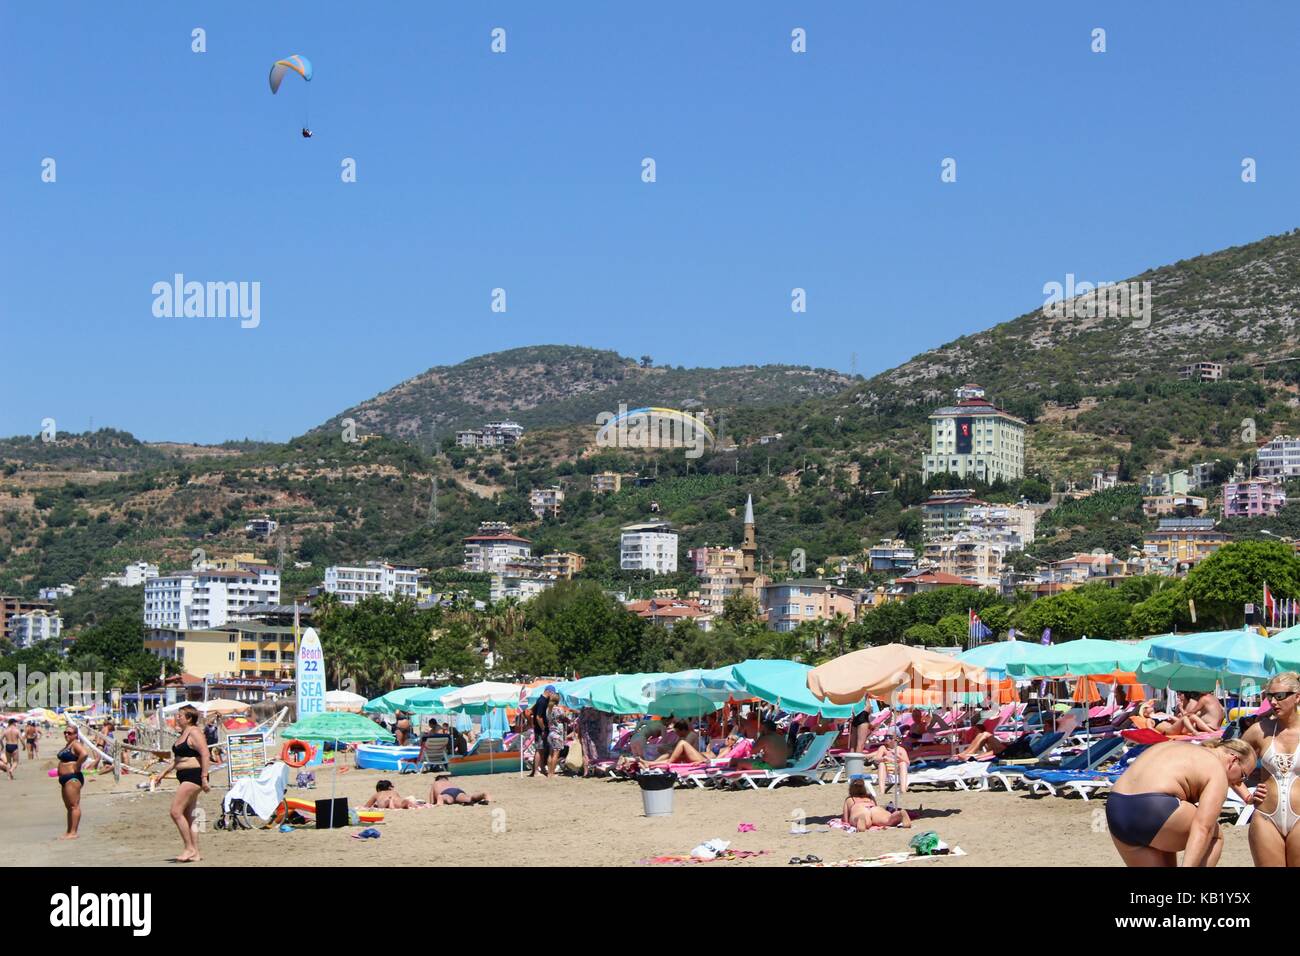 Juli, 2017 - Urlauber im Meer baden und sonnen Sie sich in der Sonne auf Cleopatra Beach (Alanya, Türkei). Stockfoto